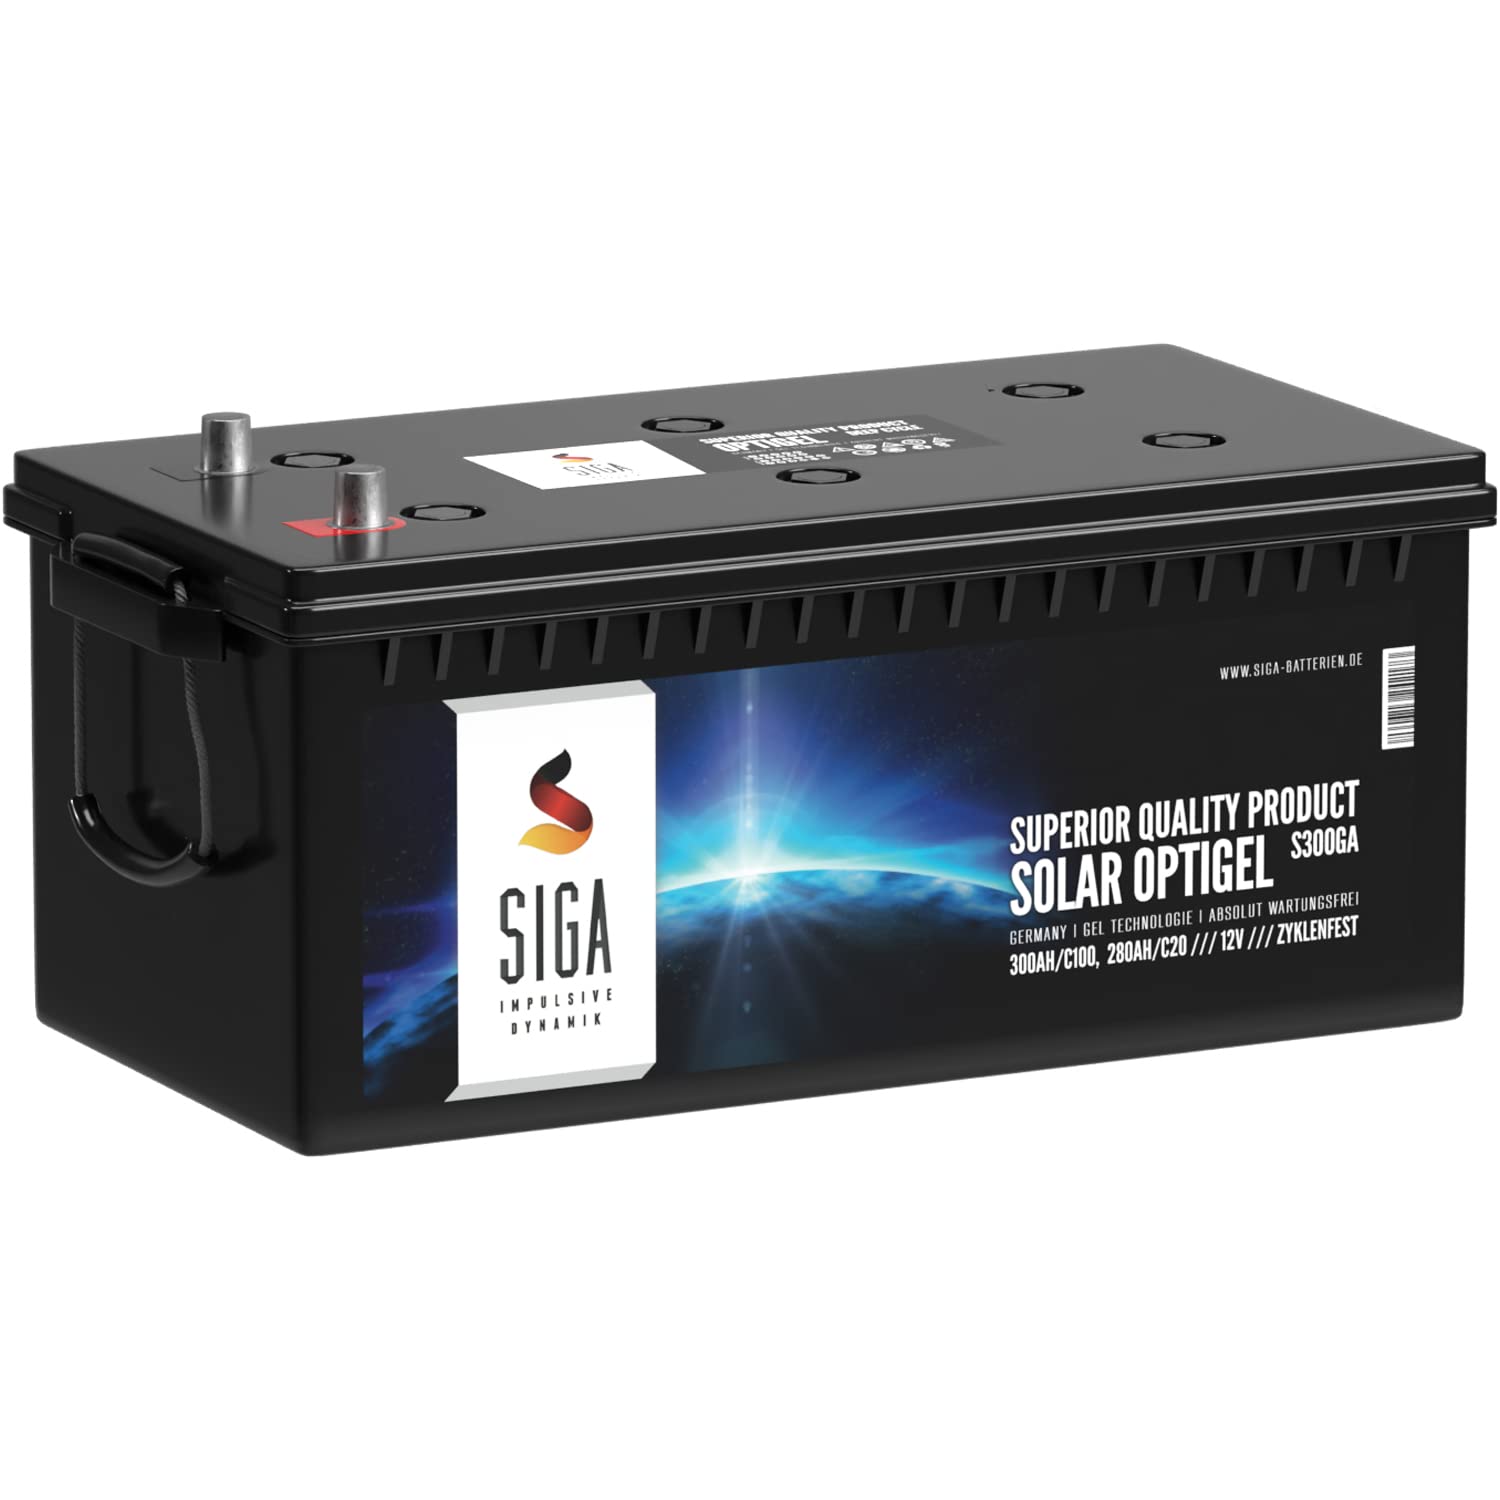 SIGA Blei-Akku 12V 300Ah Gel Akku ersetzt 280Ah Gel-Batterie Bootsbatterie Wohnmobil Batterie Solarbatterie Versorgerbatterie